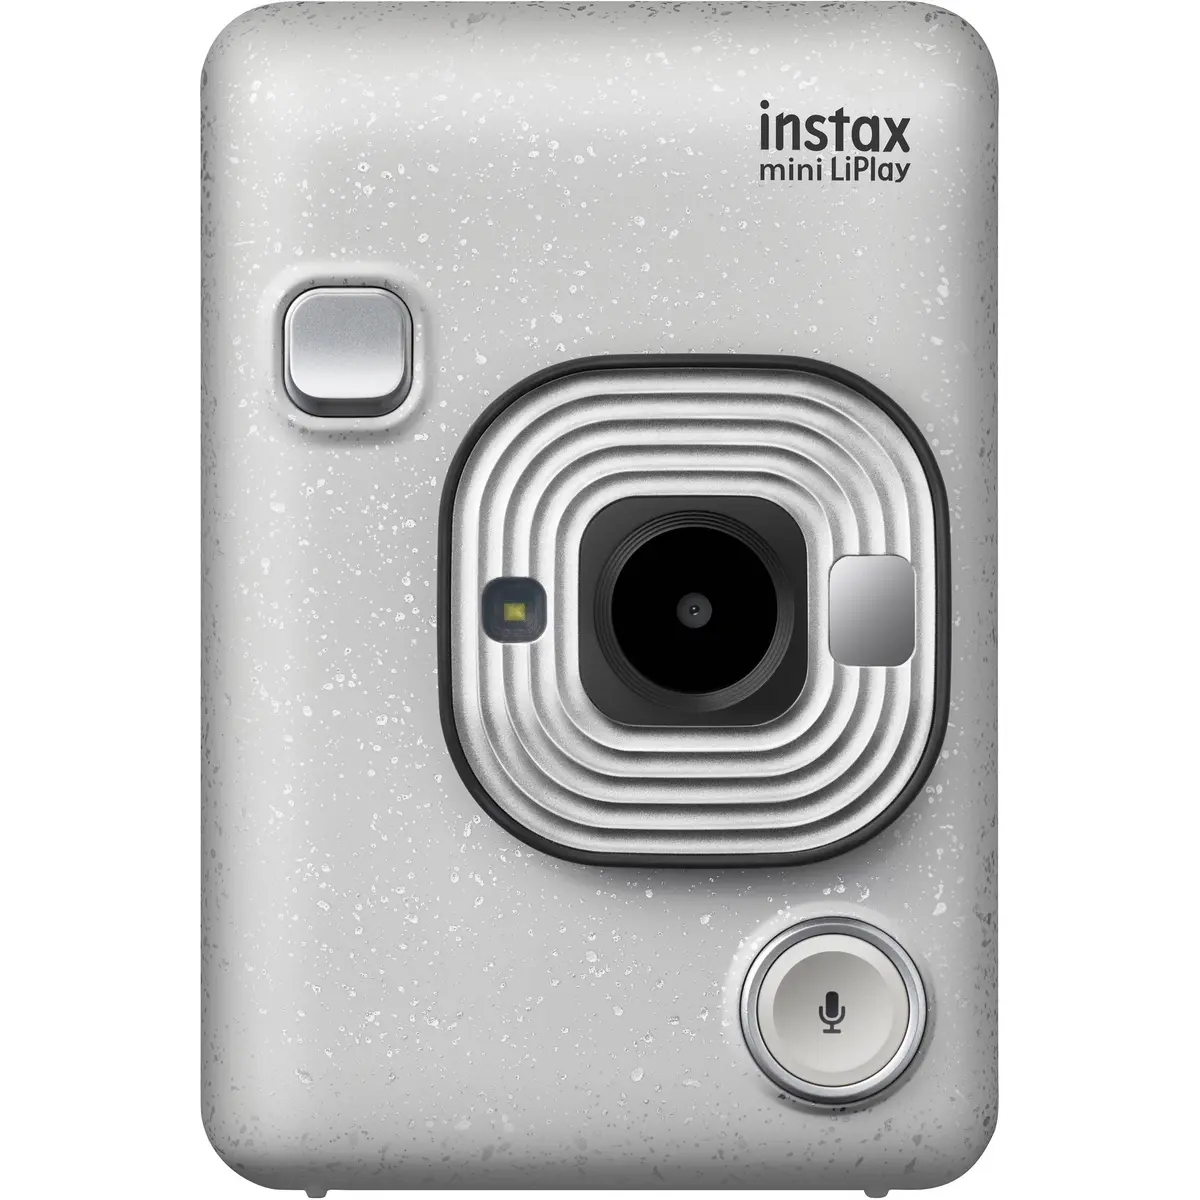 1. Fujifilm instax mini LiPlay (White)